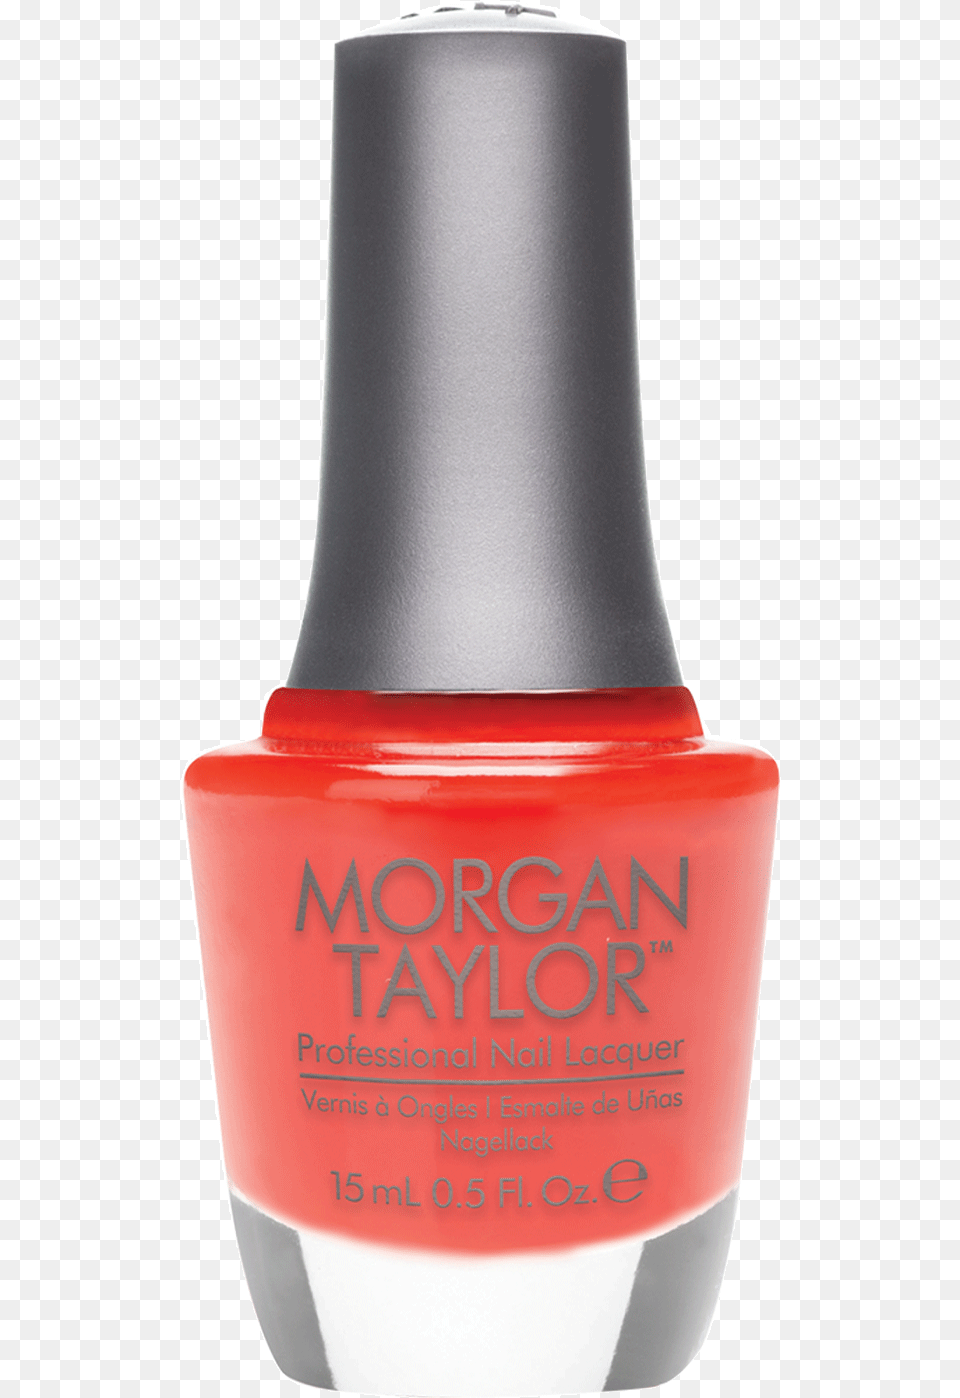 Morgan Taylor Professional Nail Lacquer Morgan Taylor Sweet Escape, Cosmetics, Bottle, Shaker, Nail Polish Png Image